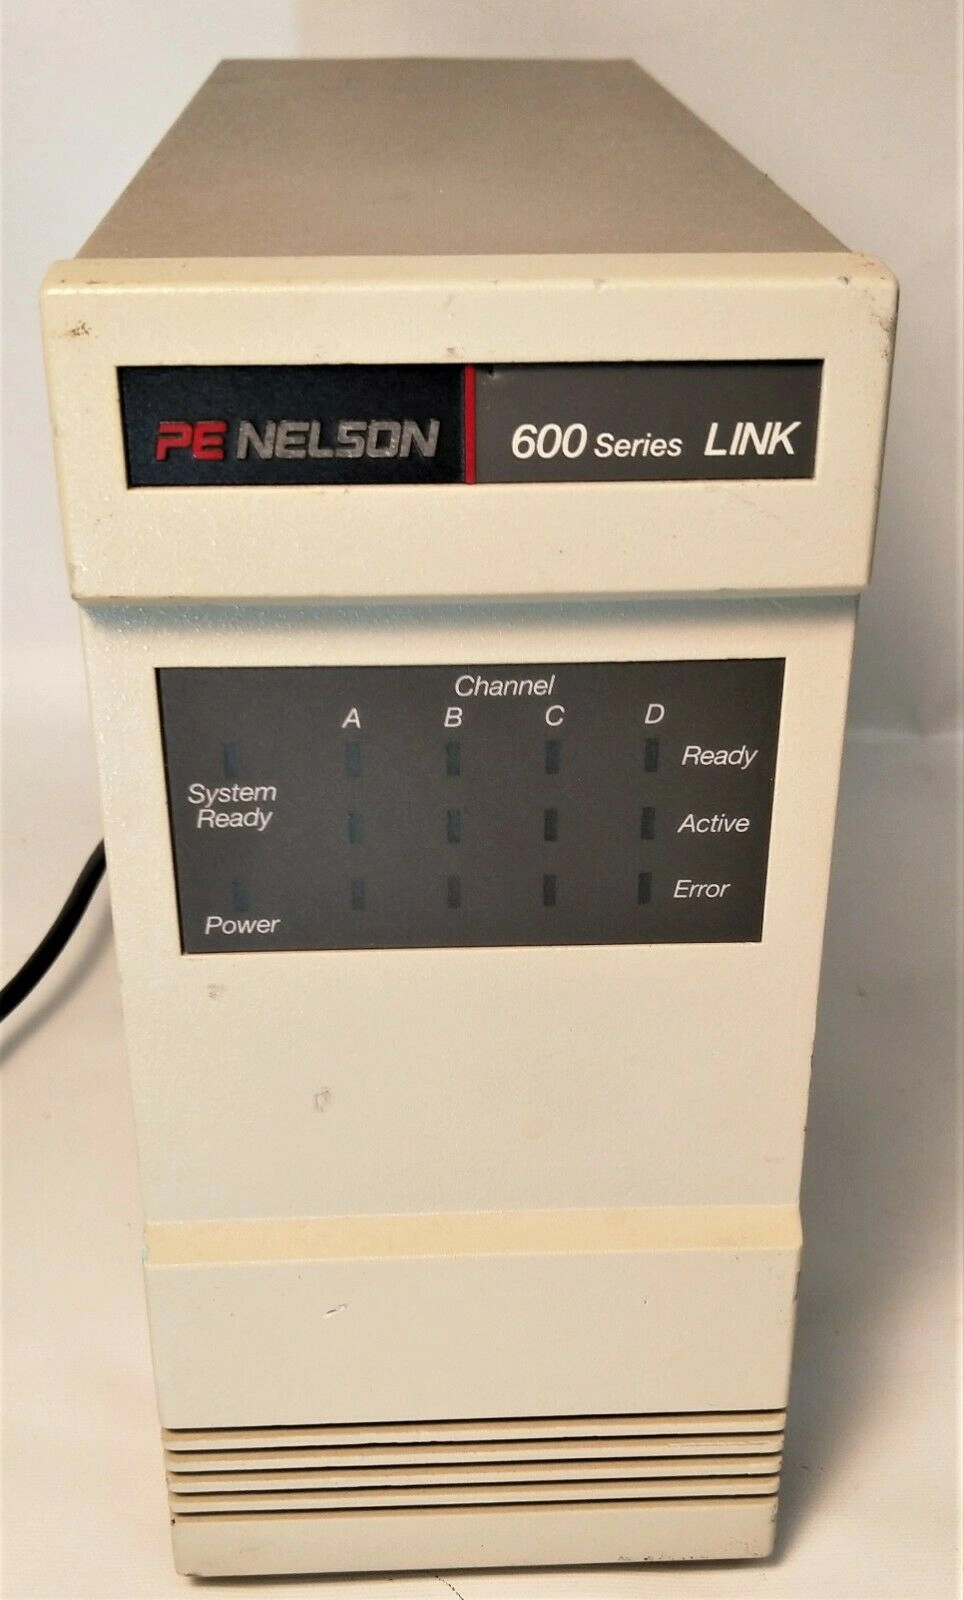 Perkin Elmer Nelson 600 Series LINK Model 610 Interface